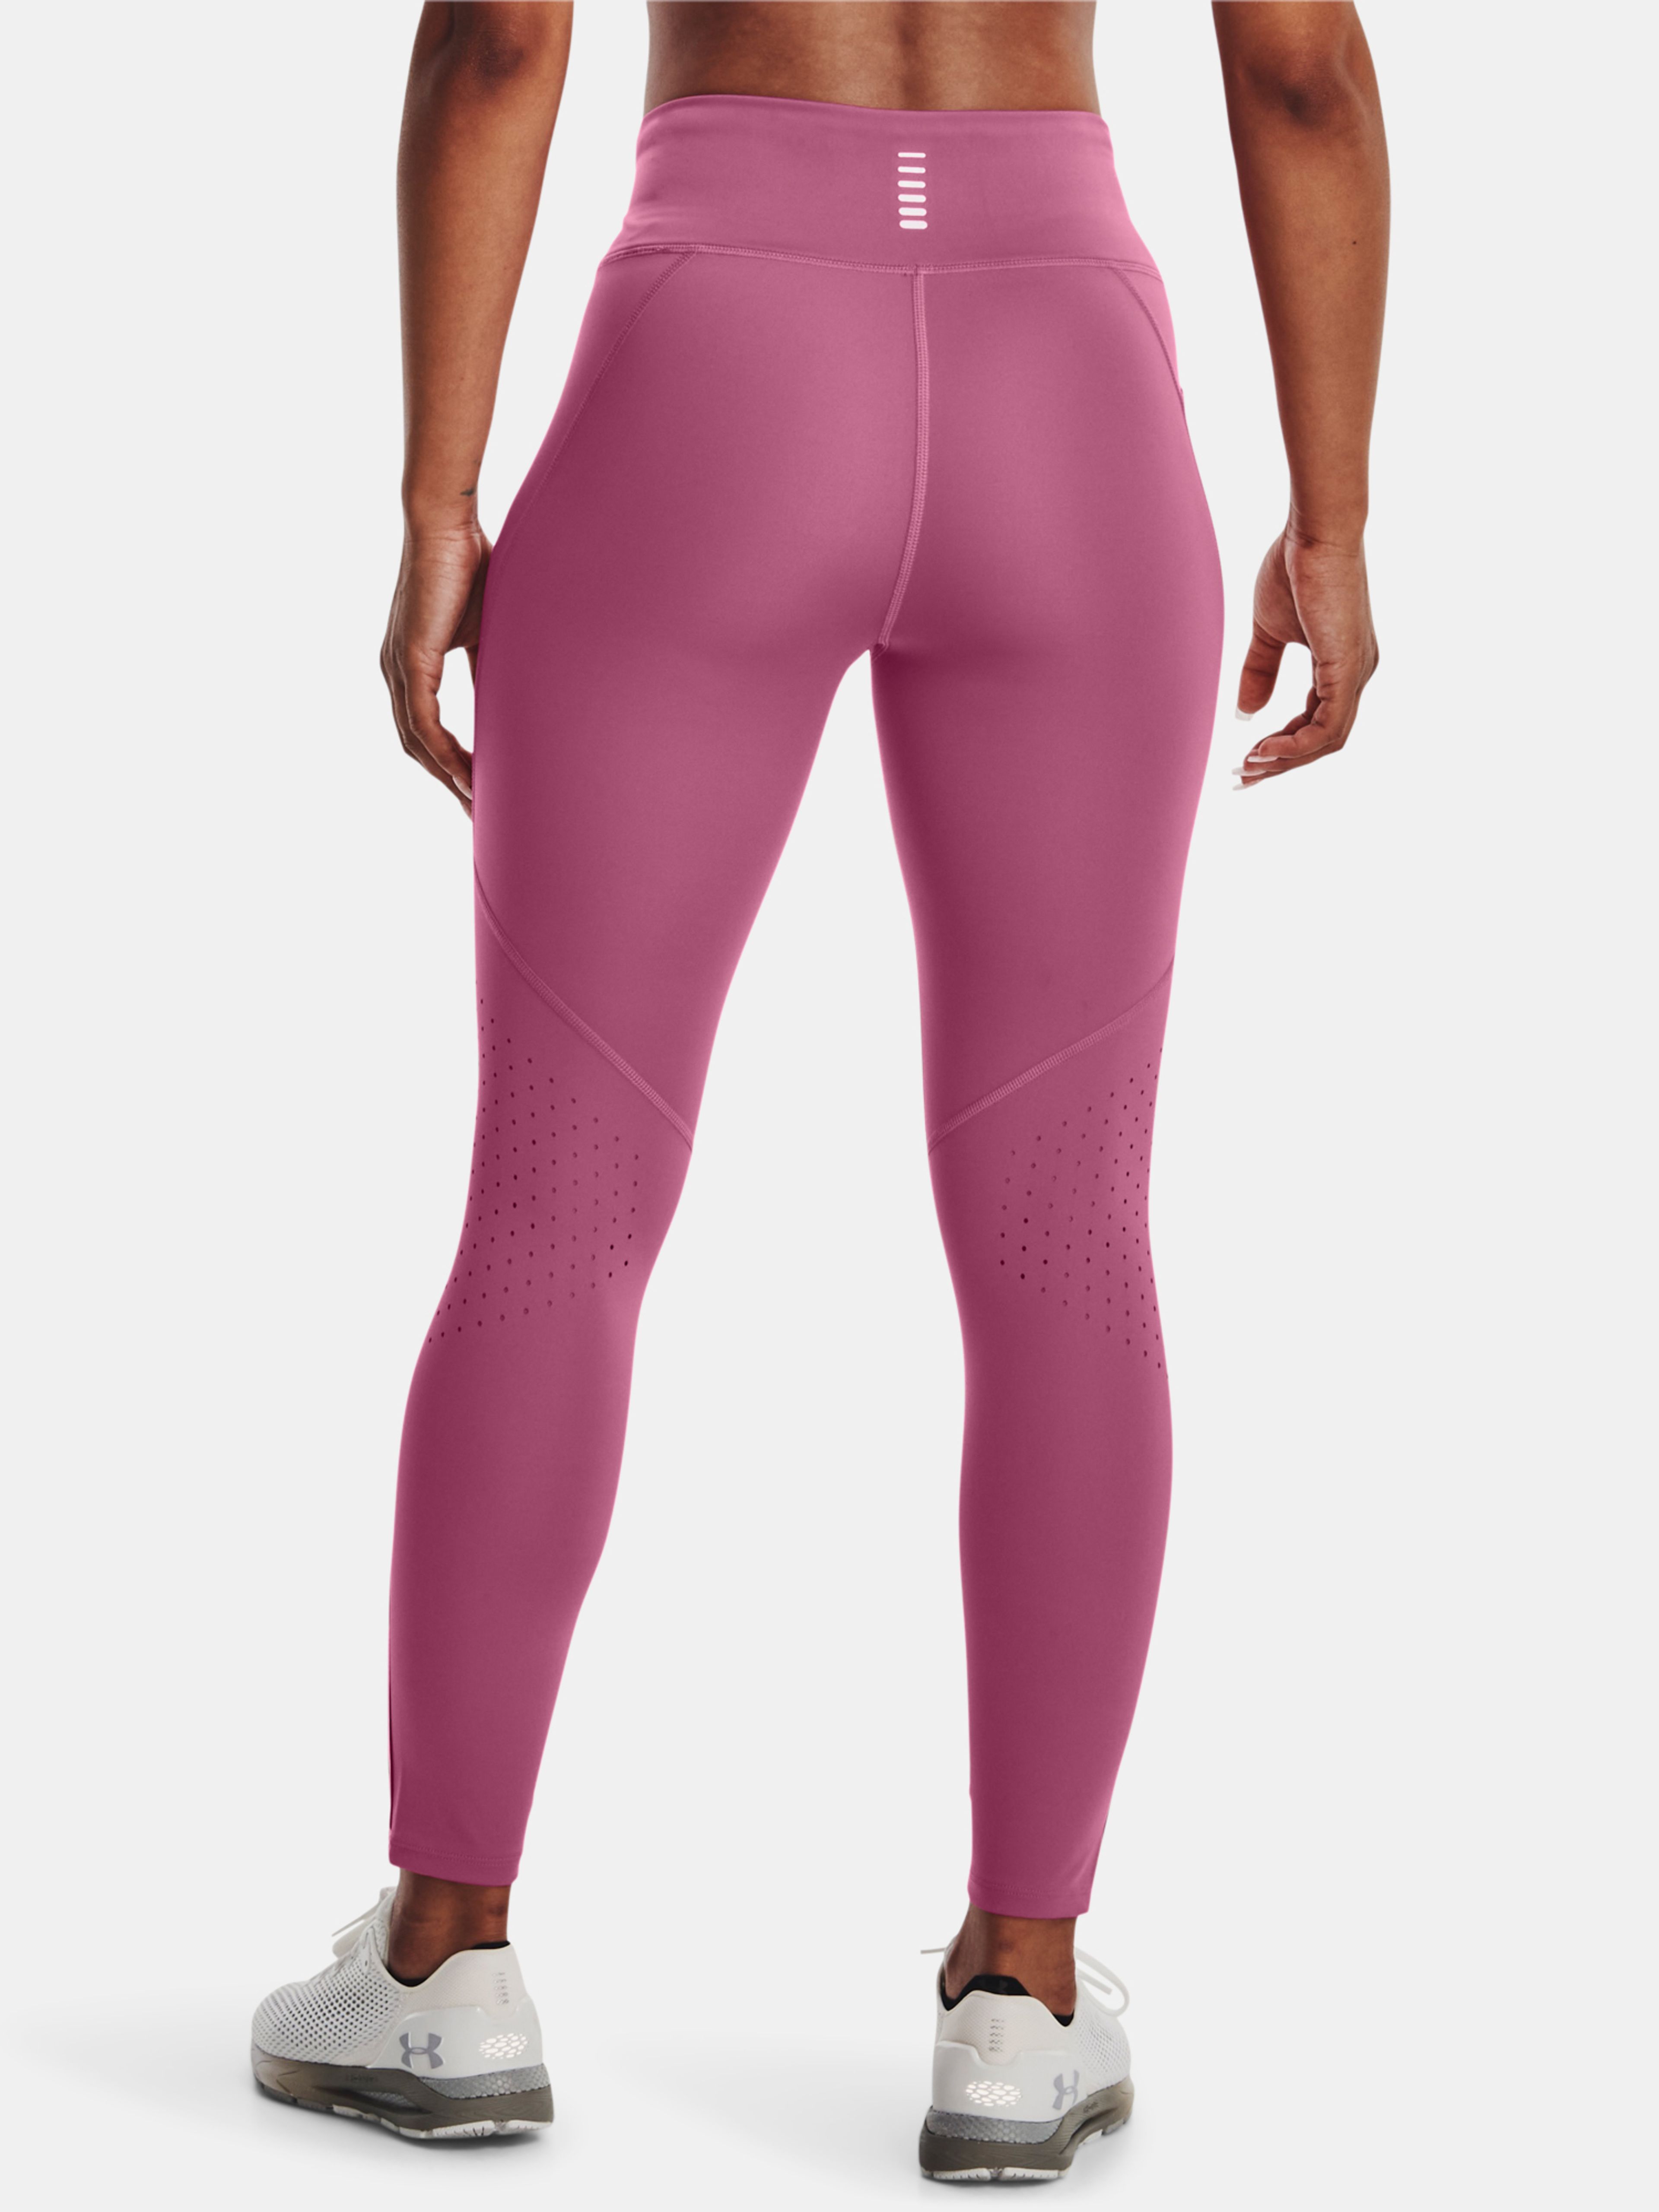  UA Fly Fast 3.0 Ankle Tight, Pink - women's running leggings  - UNDER ARMOUR - 44.17 € - outdoorové oblečení a vybavení shop